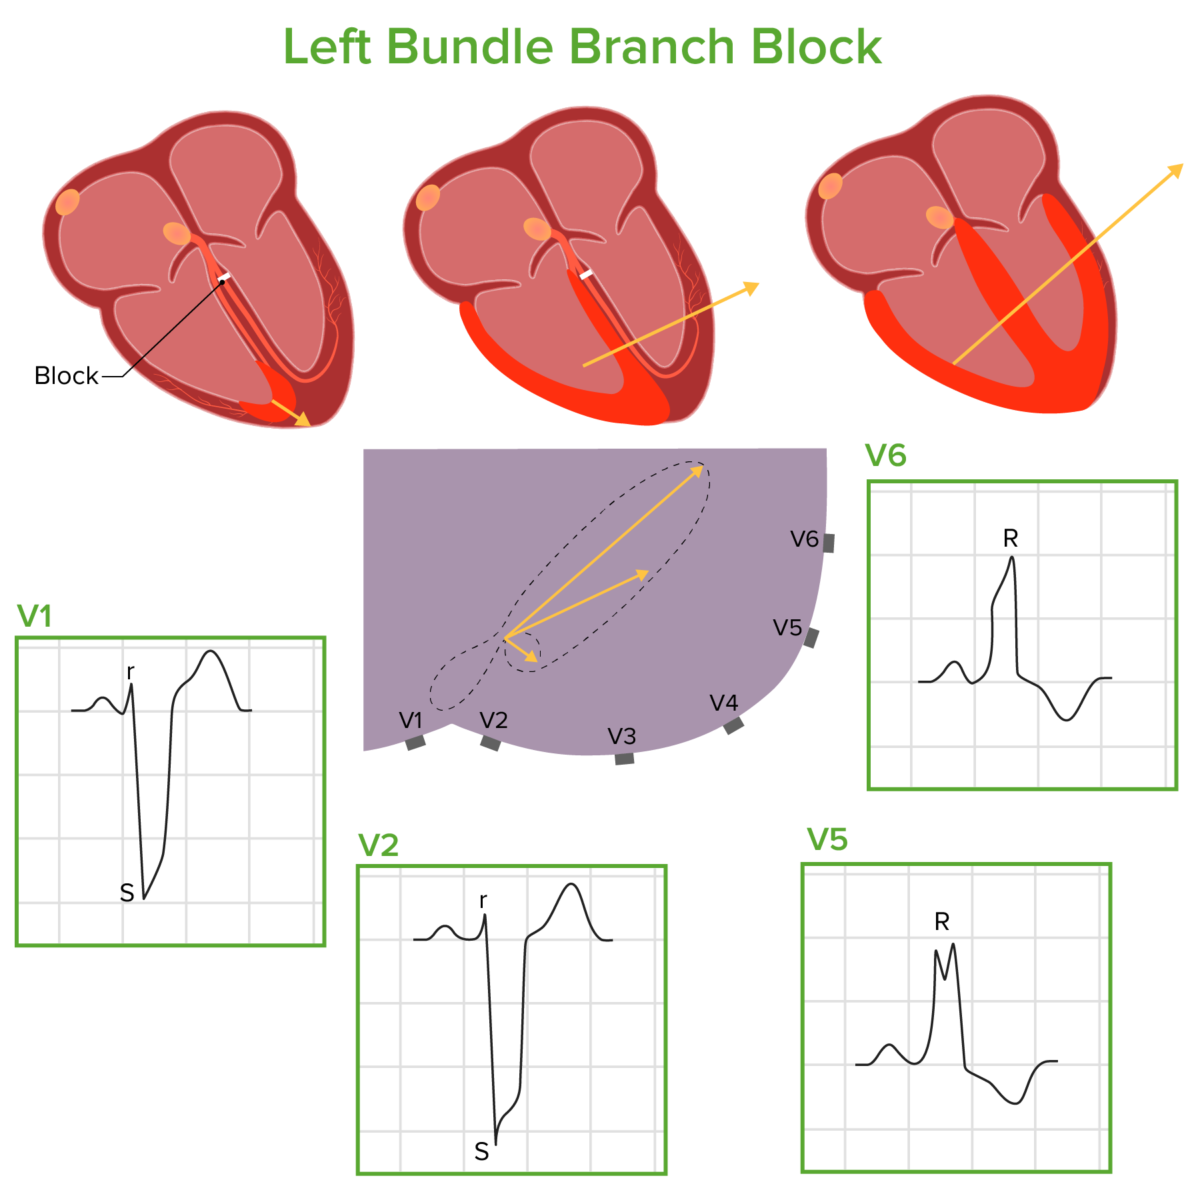 Left bundle branch block pathophysiology